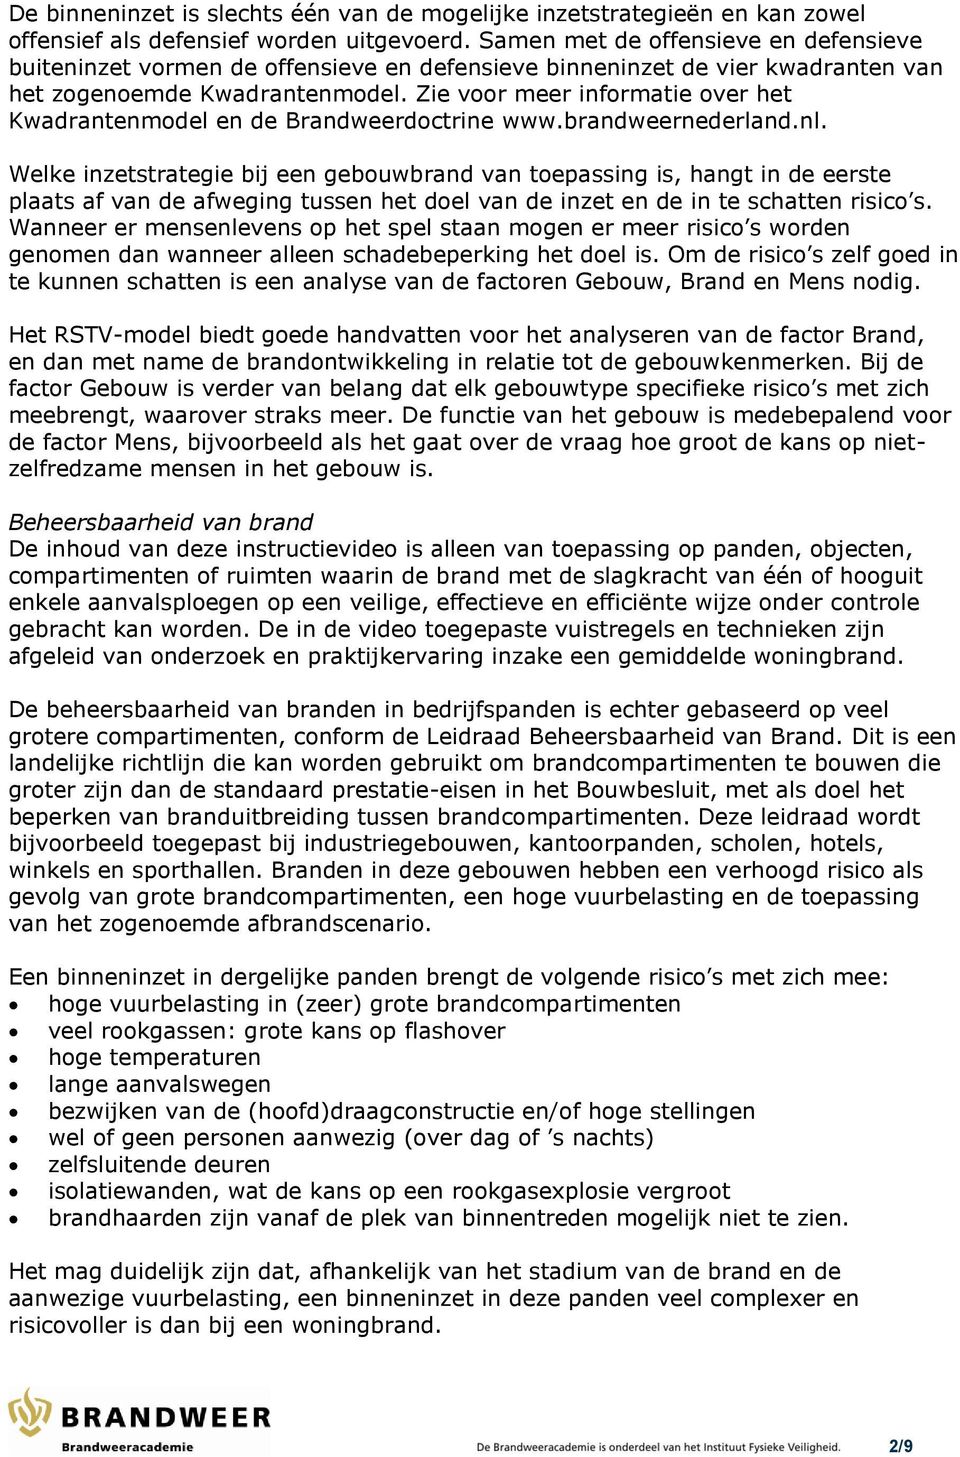 Zie voor meer informatie over het Kwadrantenmodel en de Brandweerdoctrine www.brandweernederland.nl.